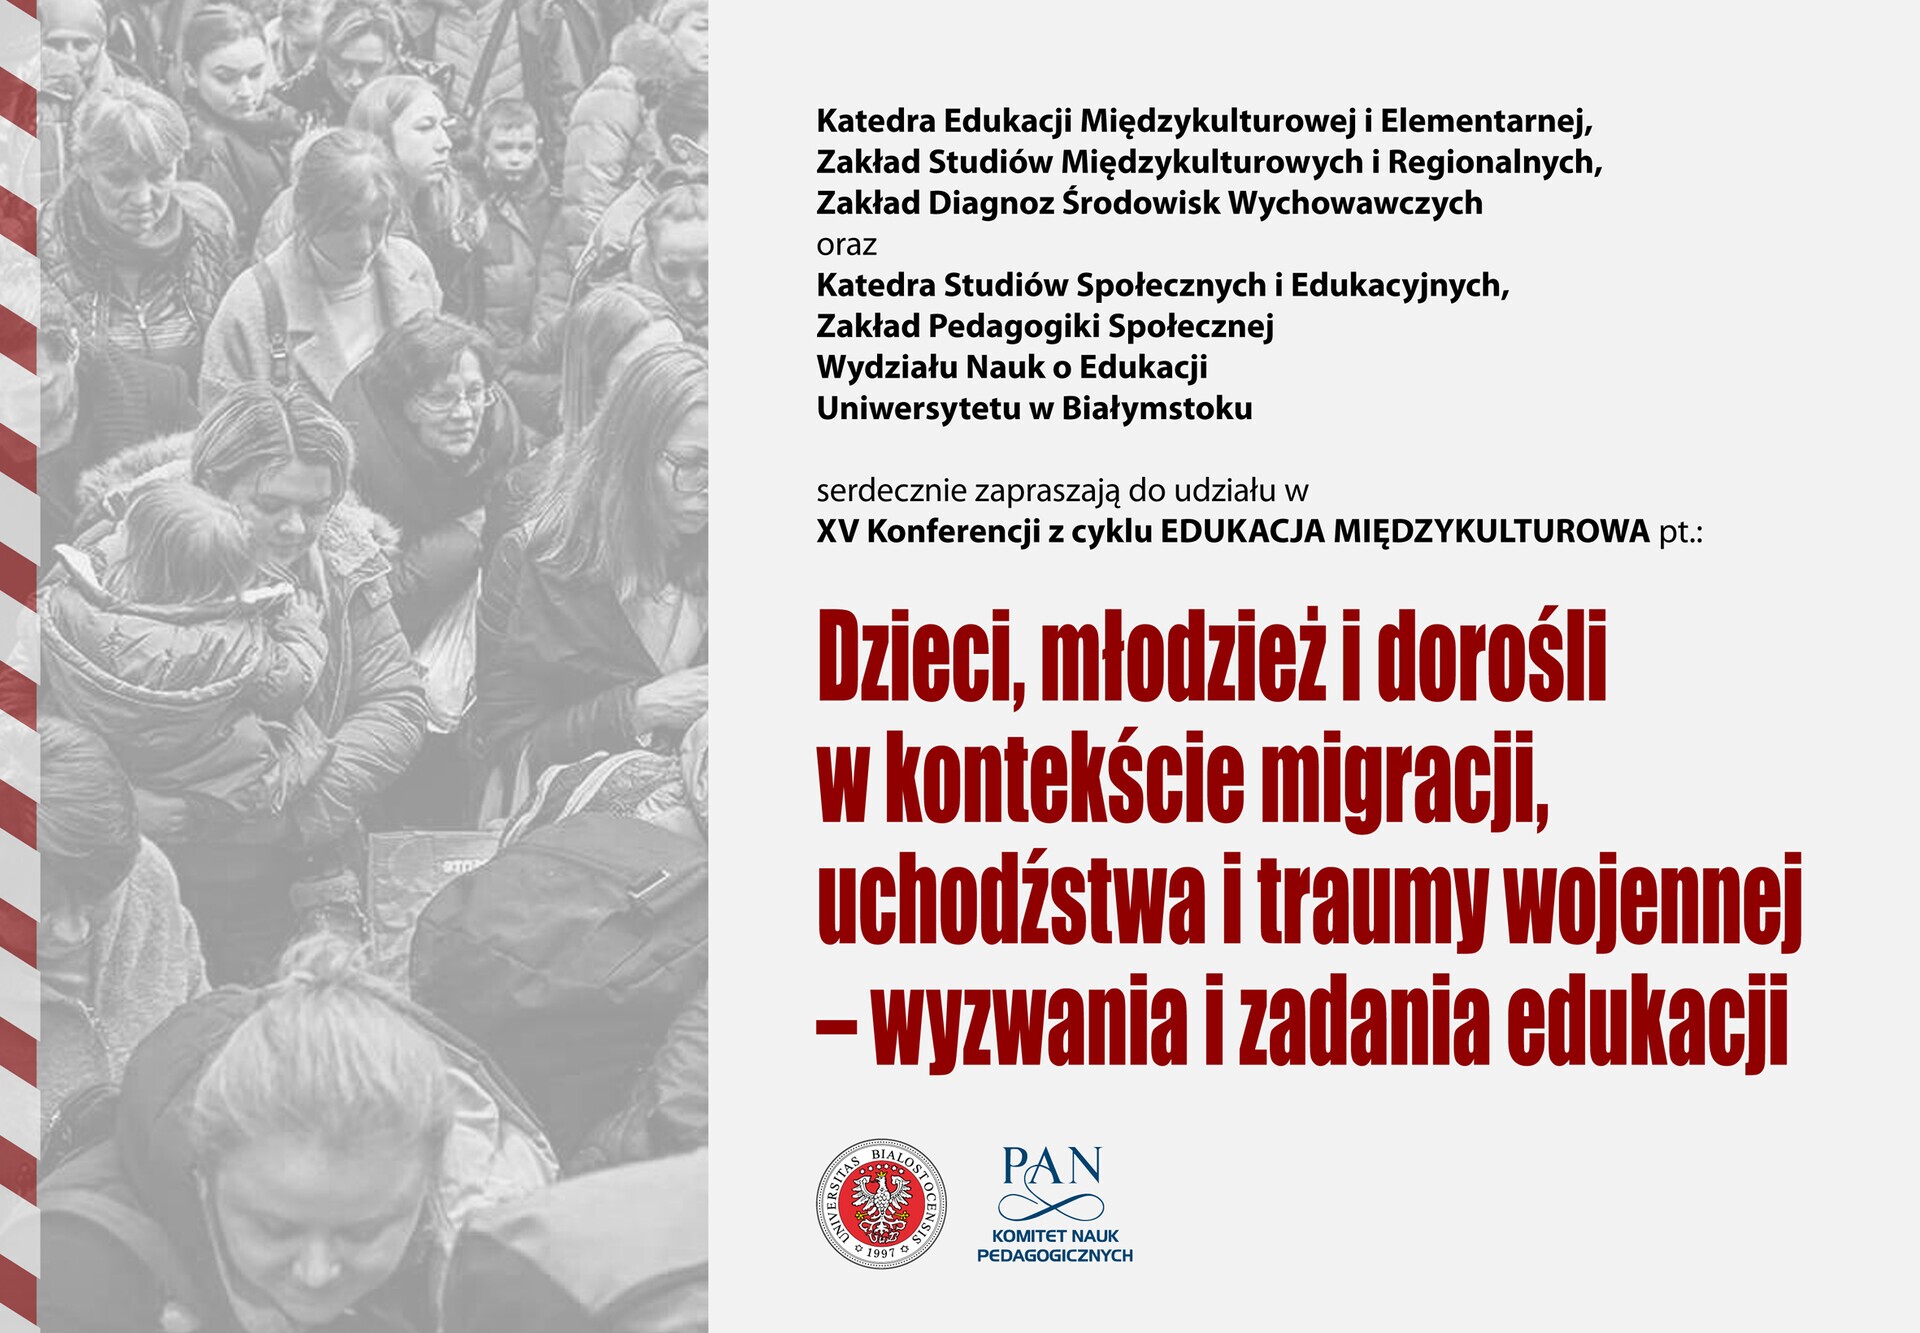 Plakat wydarzenia z napisem: XV Konferencji z cyklu EDUKACJA MIĘDZYKULTUROWA pt.: „Dzieci, młodzież i dorośli w kontekście migracji, uchodźstwa i traumy wojennej – wyzwania i zadania edukacji”